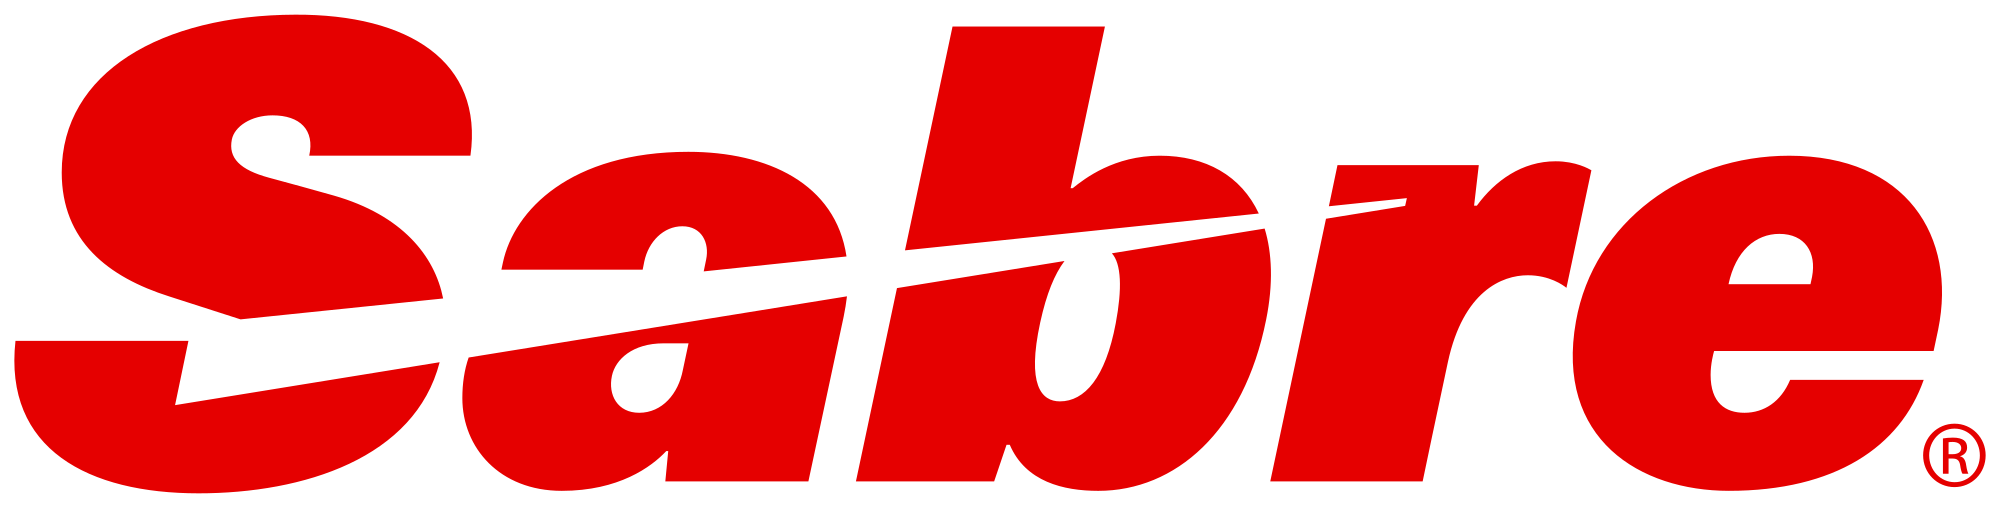 Sabre Corporation Logo - Sabre Corporation logo.svg